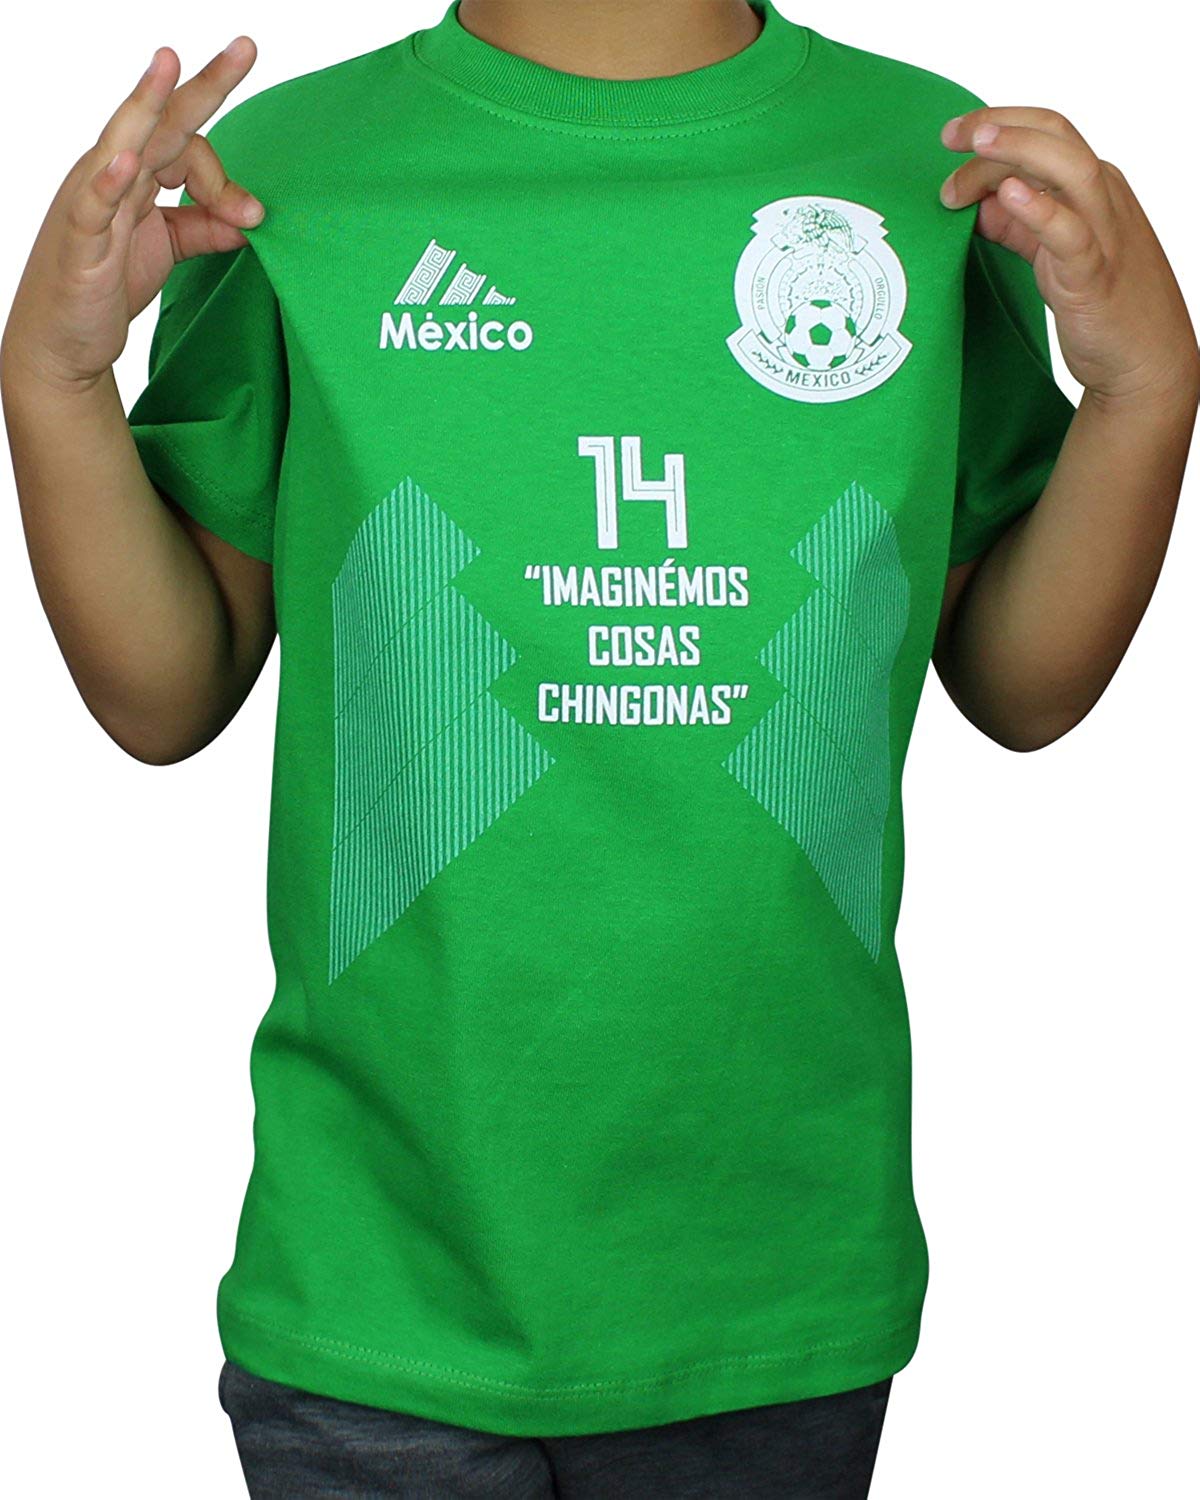 Chicharito Logo - Amazon.com: Imaginemos Cosas Chingonas Kids Shirt Chicharito Javier ...